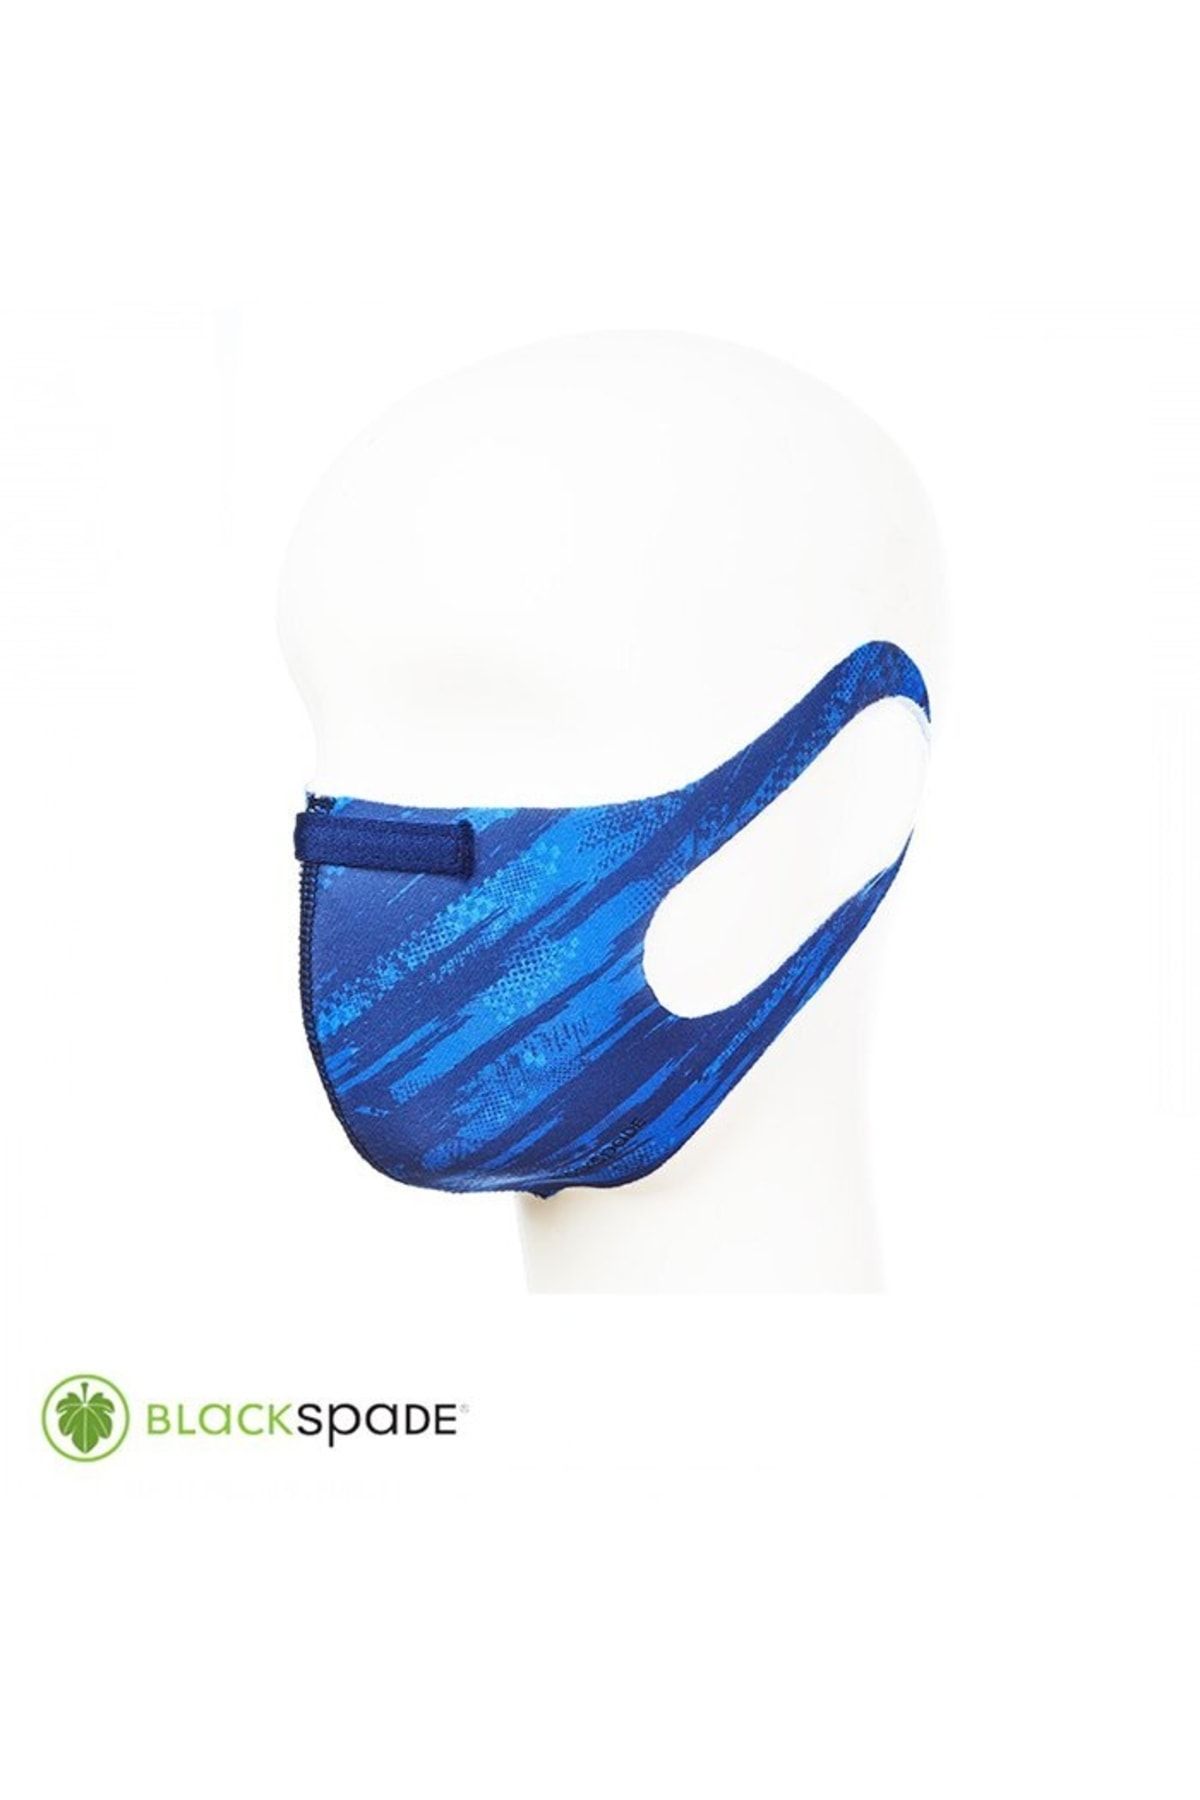 Blackspade Unisex Koruyucu Maske Yarış Desen M